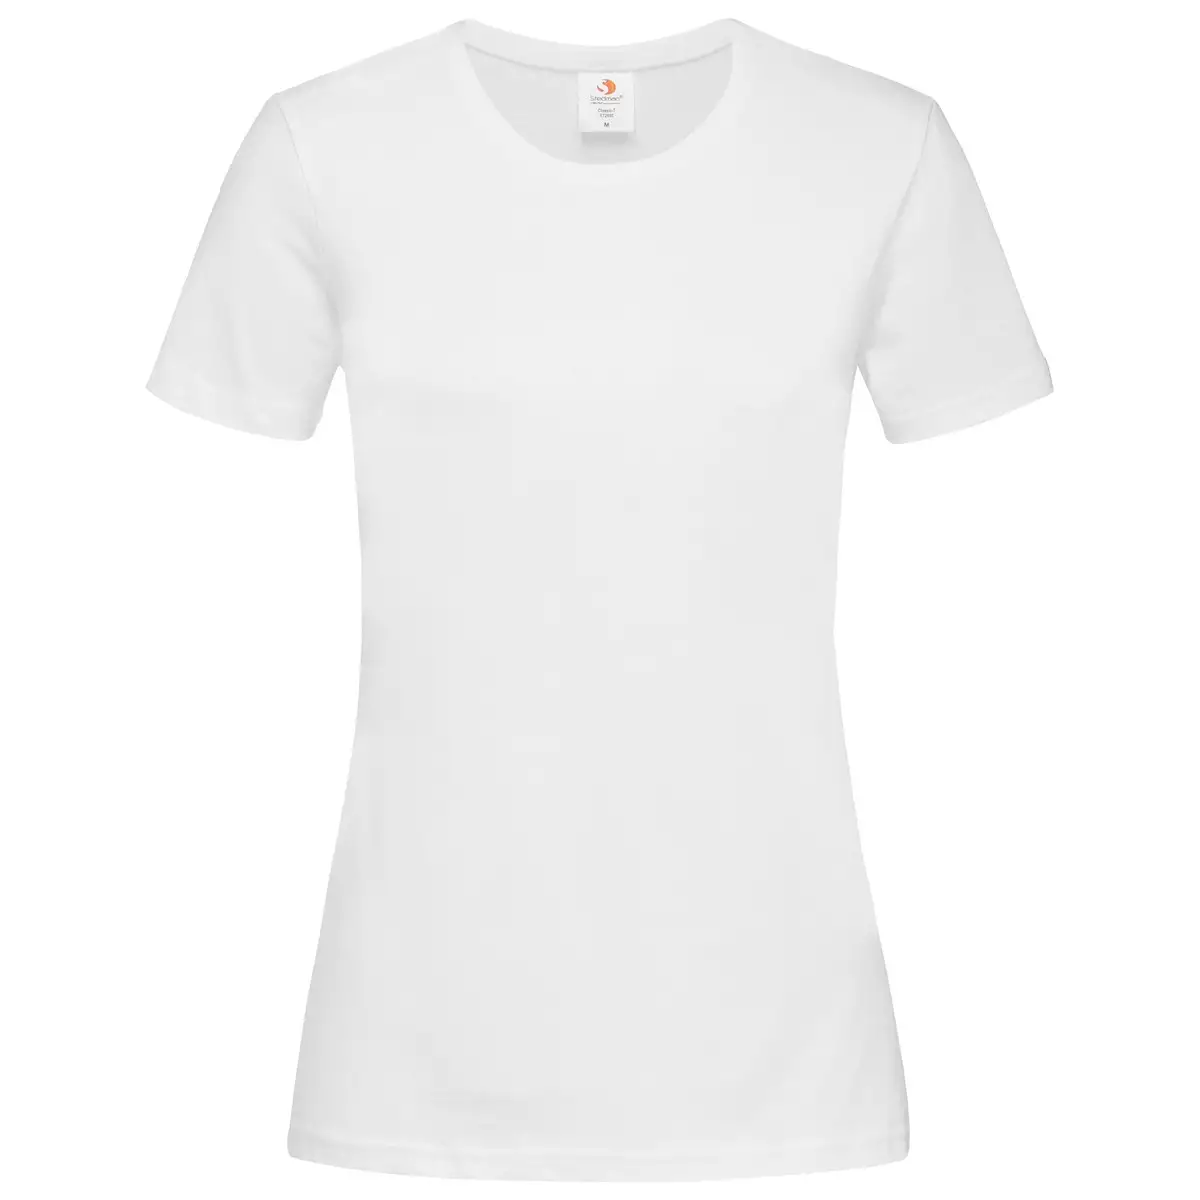 T-Shirt Manica Corta Donna Personalizzata Cotone - Stedman